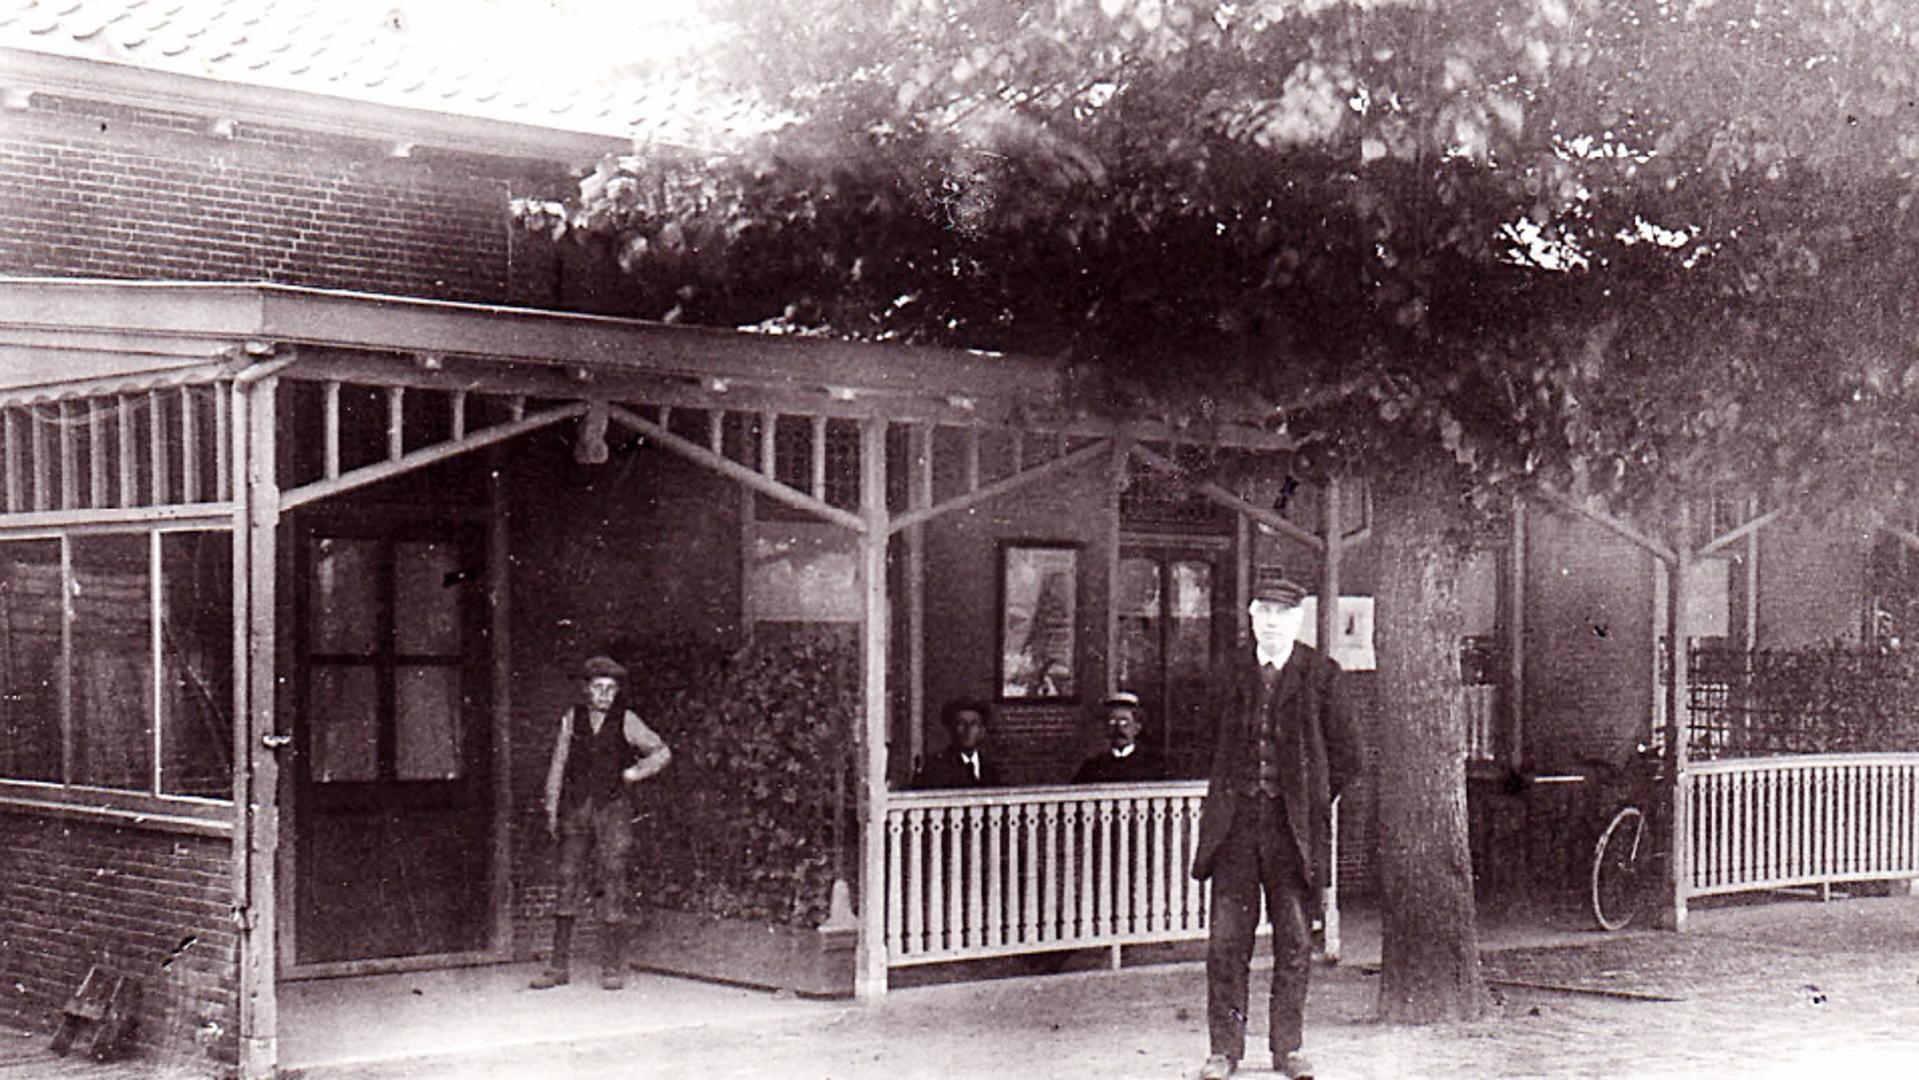 Café Welgelegen met aannemer de Rooij die tevens uitbater was, ca 1910 uit collectie Loek de Groot.